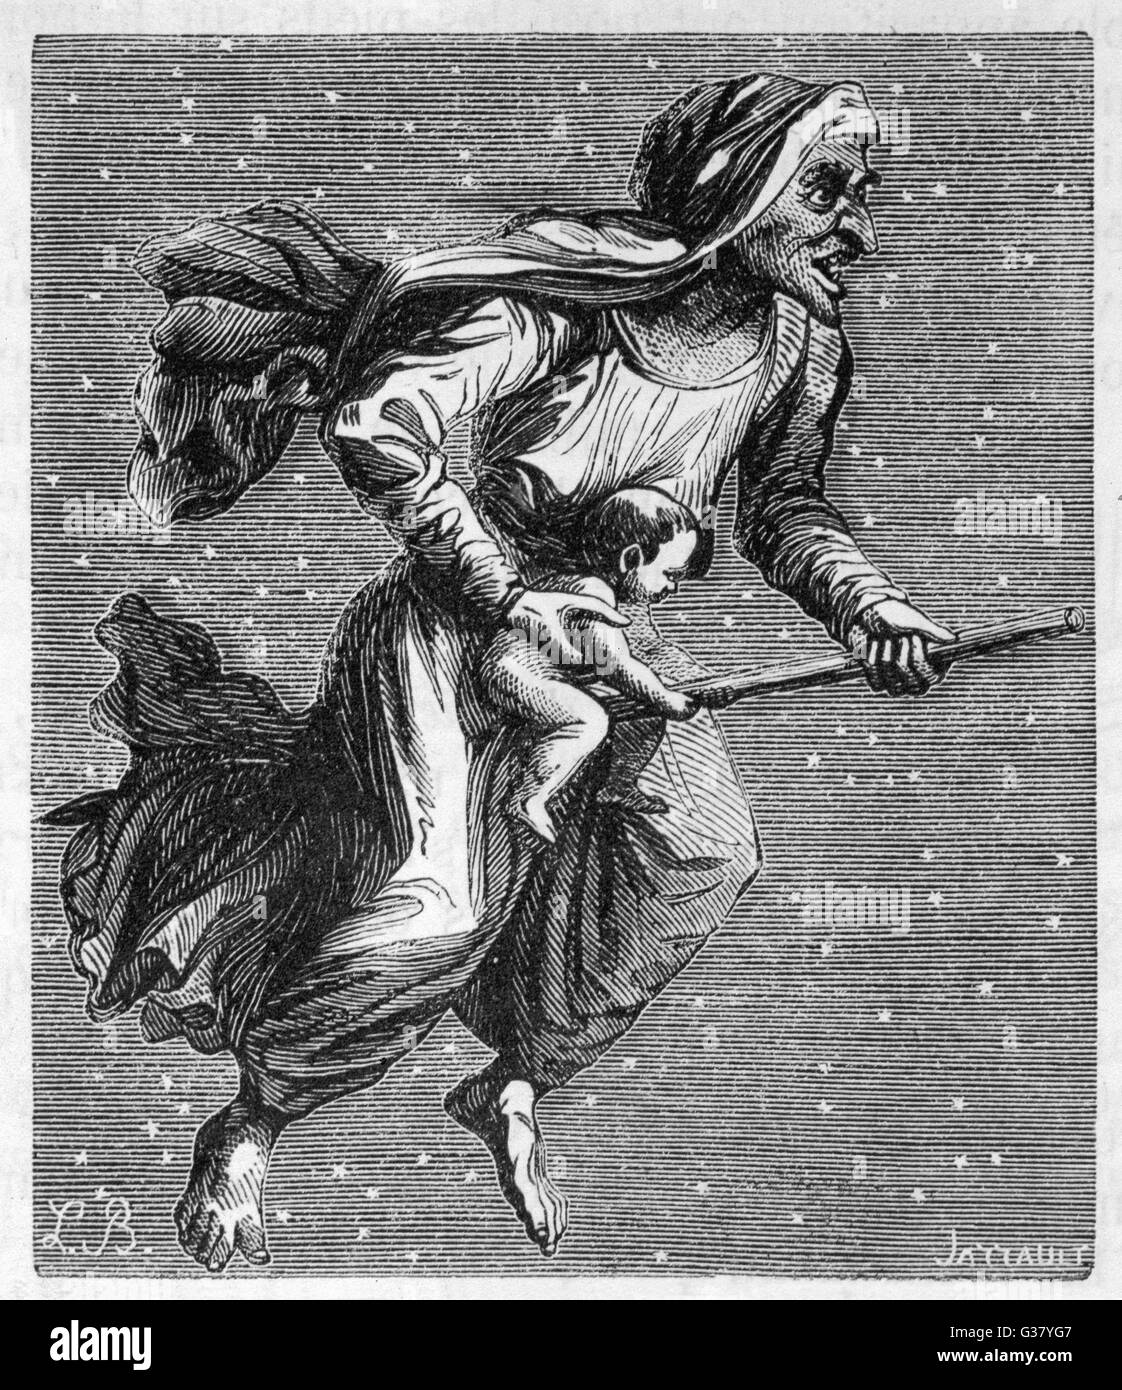 Une sorcière à travers le ciel étoilé sur son balai, transportant un bébé qu'elle a emprunté à sa maman. Banque D'Images